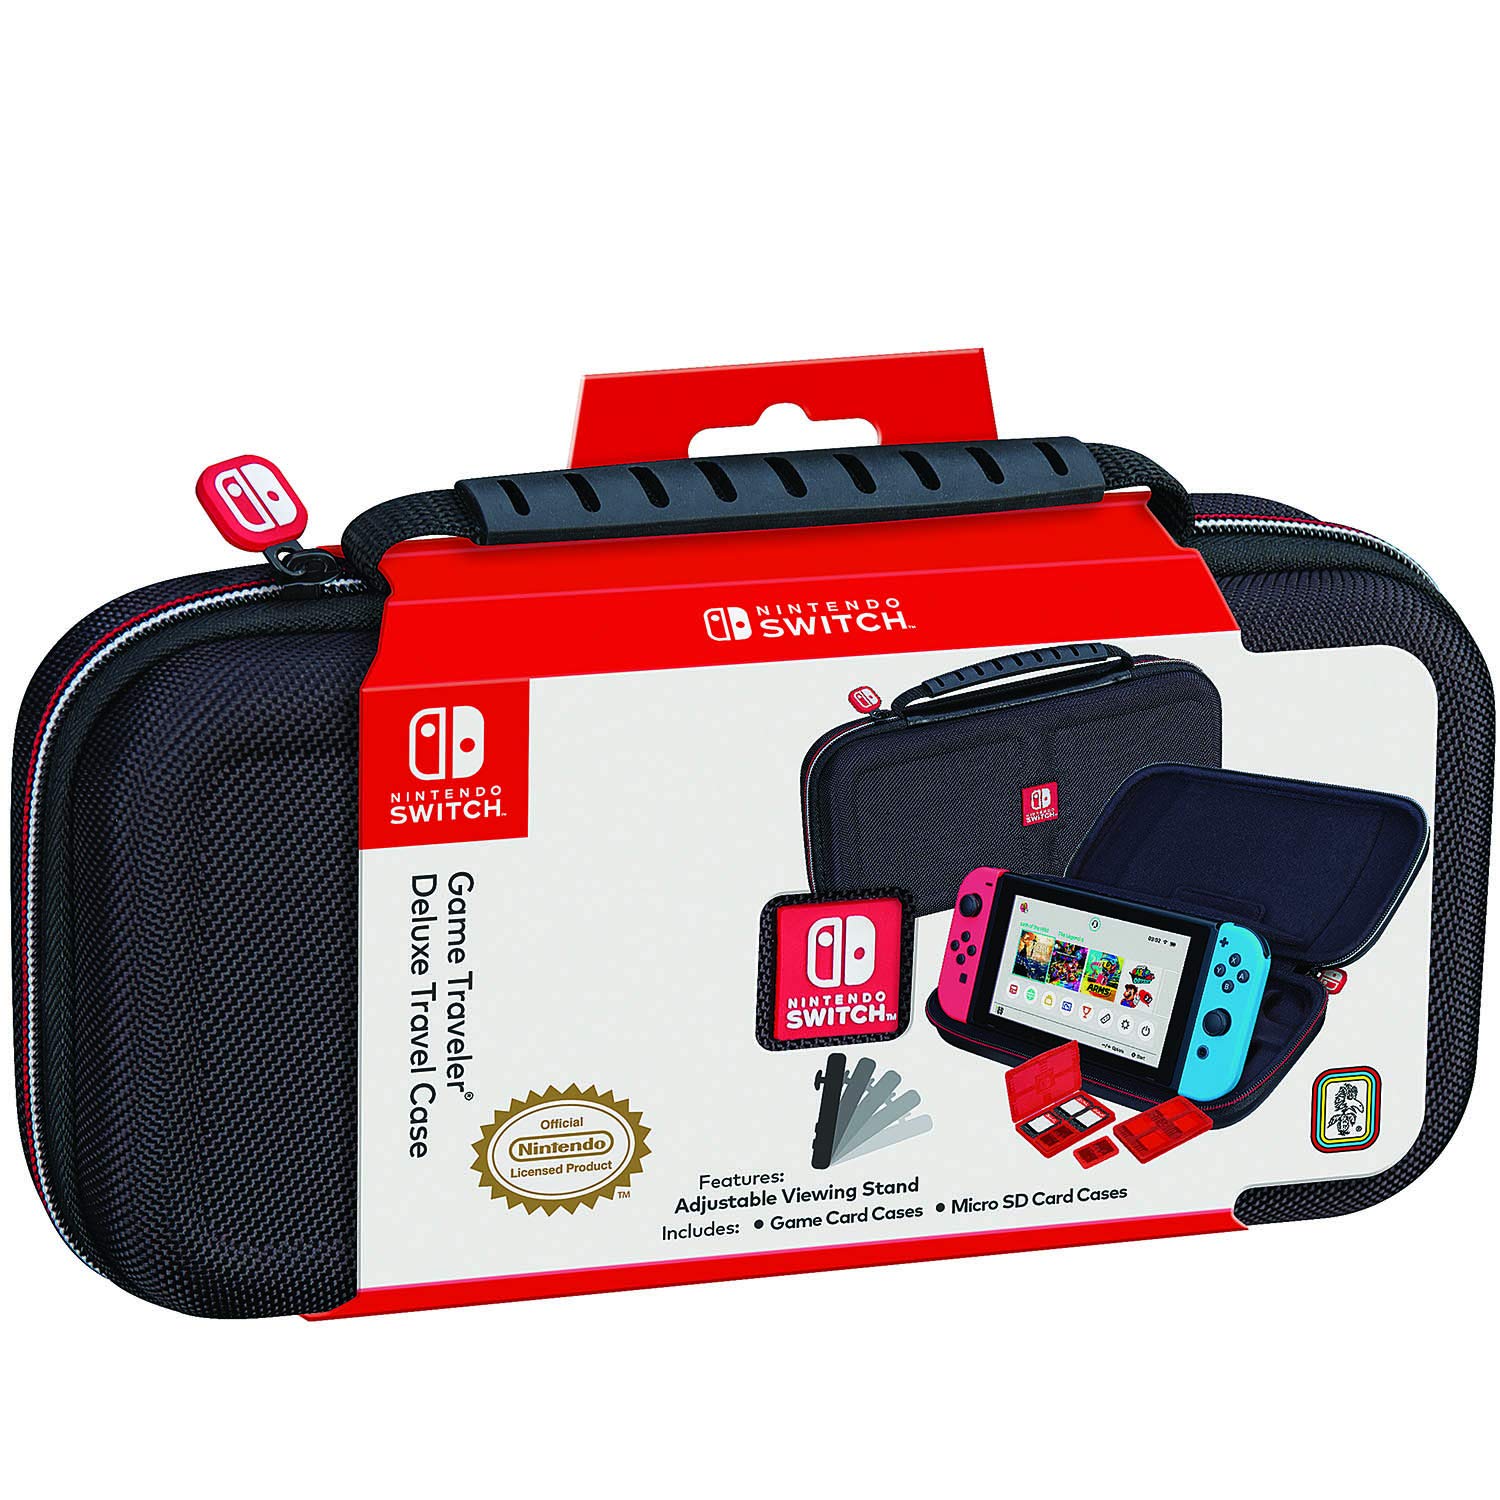 Transformer loop Have en picnic Køb Nintendo Switch Deluxe Travel Case (Black) - Nintendo Switch - Black -  Engelsk - Standard